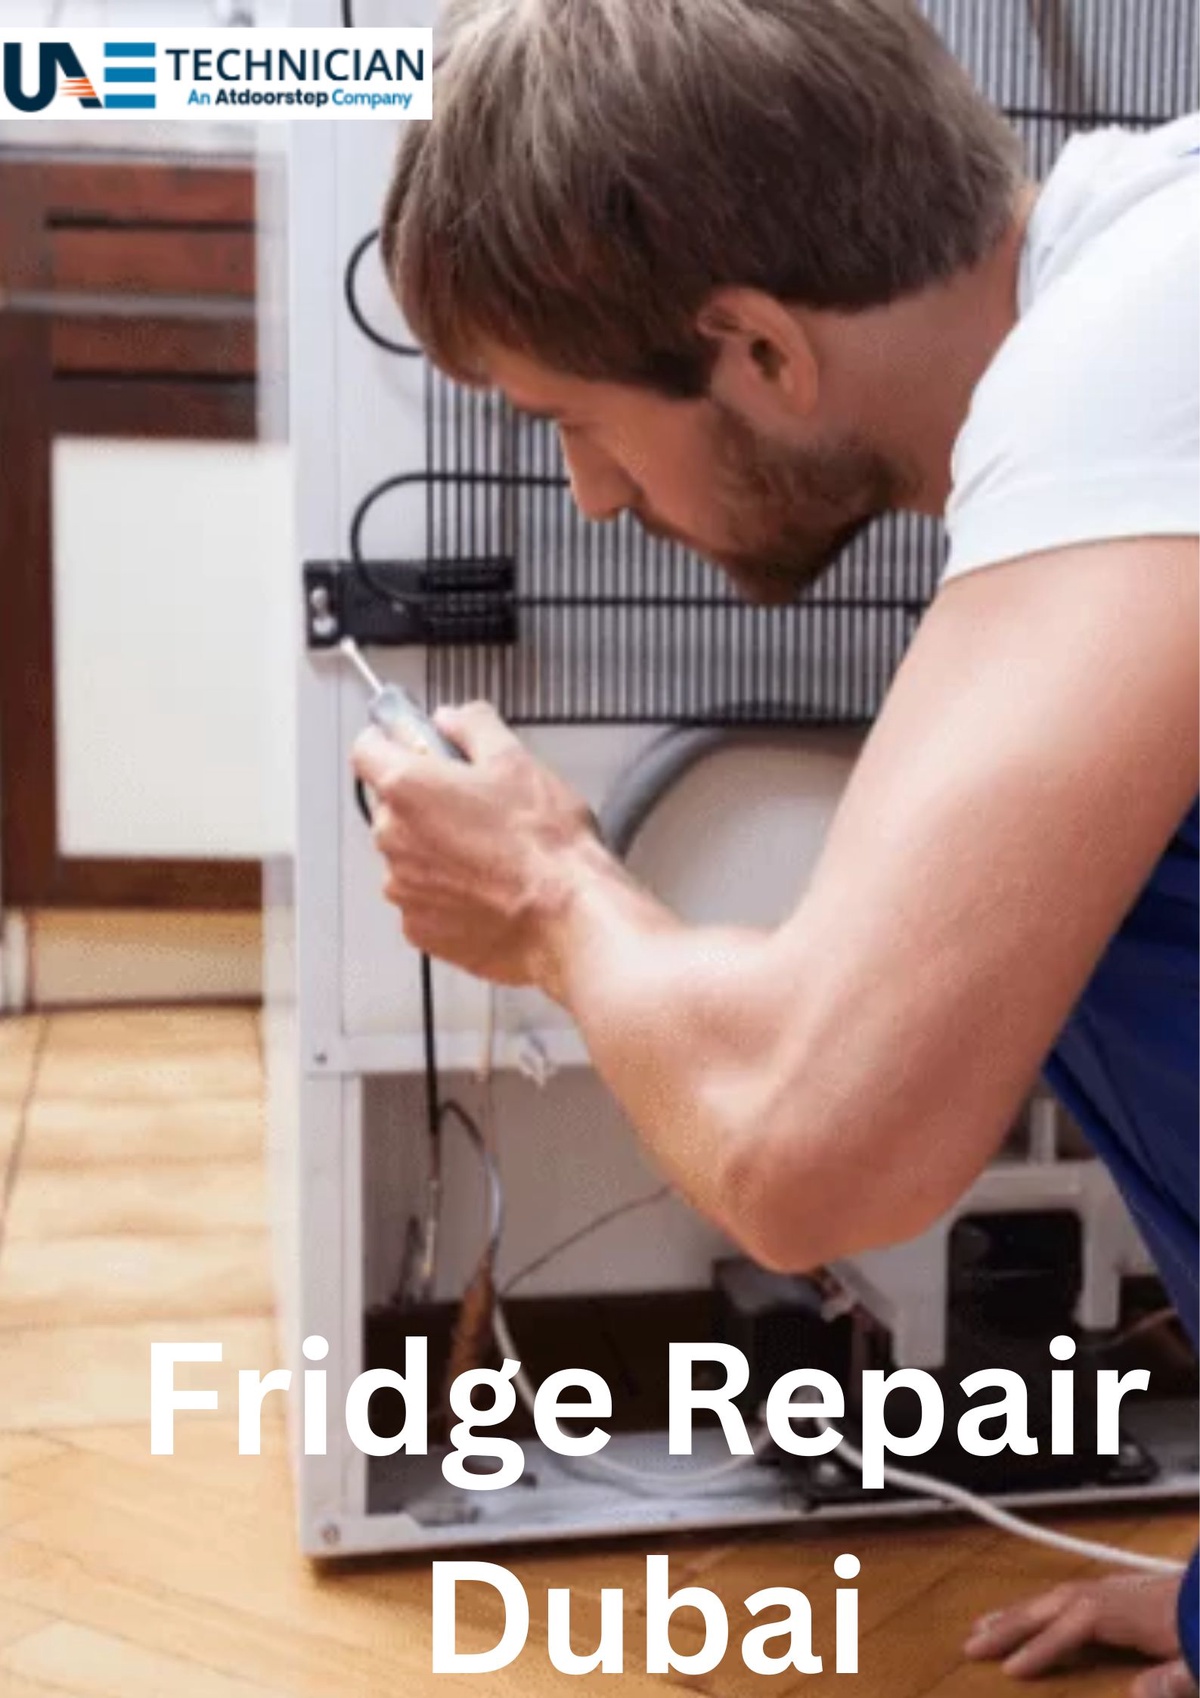 Refrigerator repair & fridge repair in Dubai and UAE